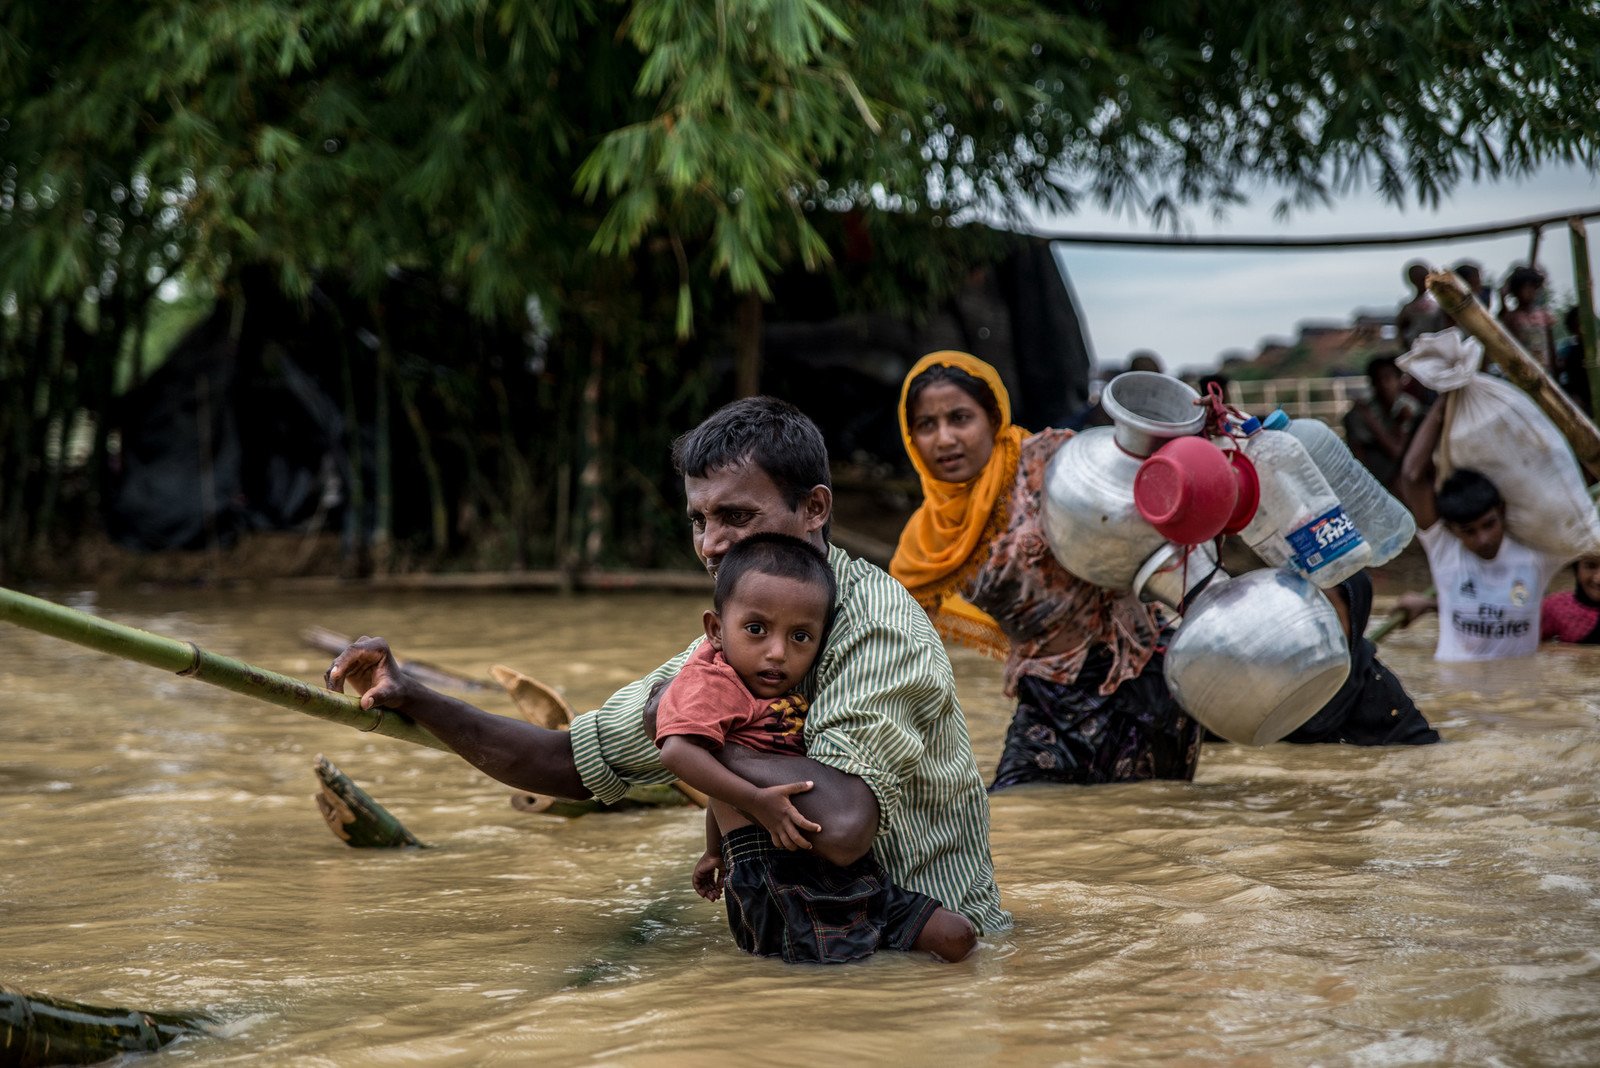 Balakhali難民營位於孟加拉境內，一名抱著兒子的父親，正利用破爛的竹橋渡過這條位於難民營附近的河流。連續三天的大雨令許多難民臨時棲身所出現水浸，迫使他們遷往地勢更高的地方。 photo: Aurélie Marrier d'Unienville